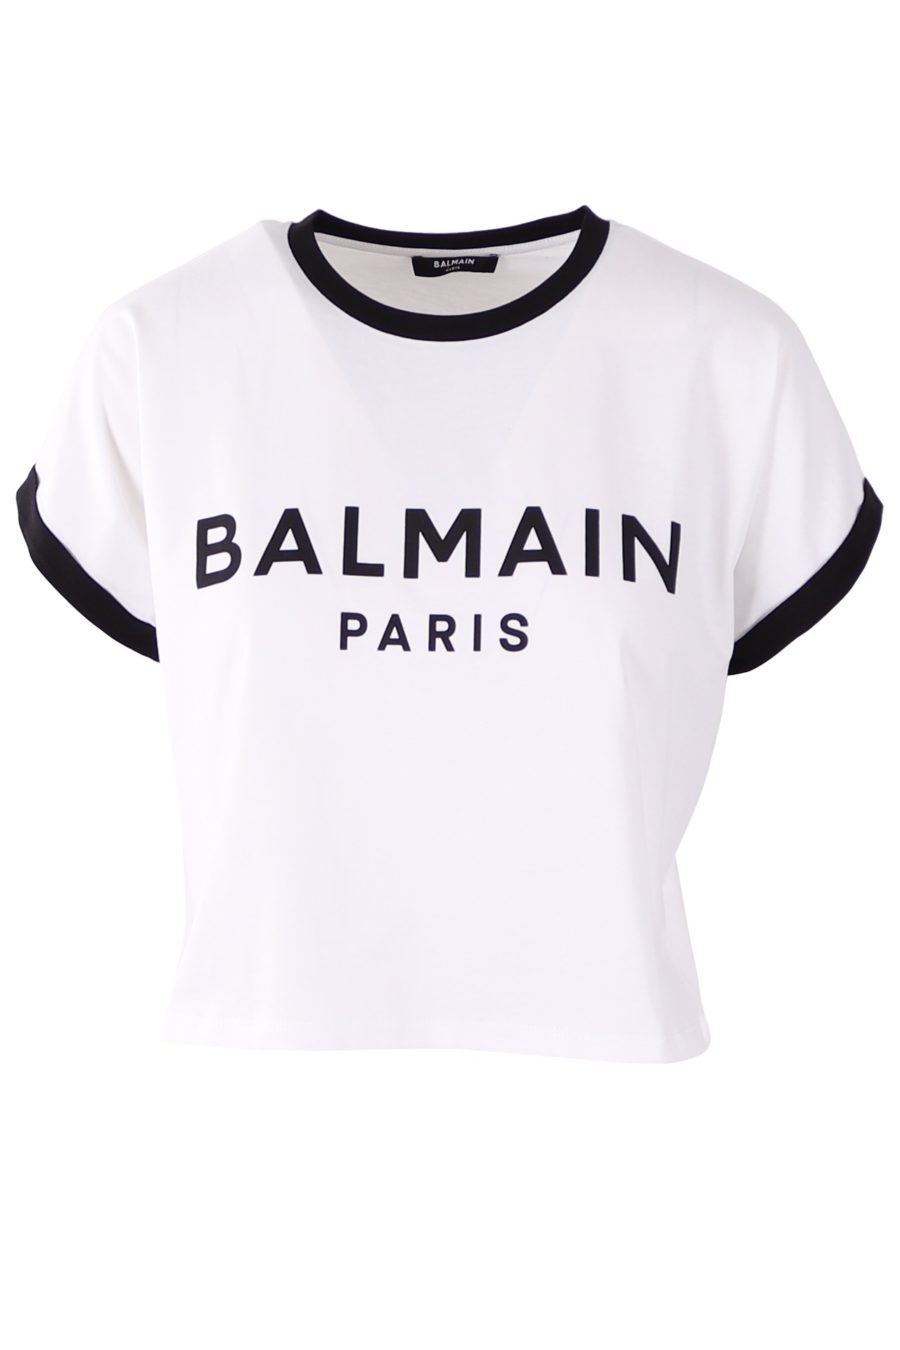 Balmain kurzes T-Shirt weiß mit schwarz beflocktem Logo - 2cb284172dce74a8e50699d332c31511a4f799ee